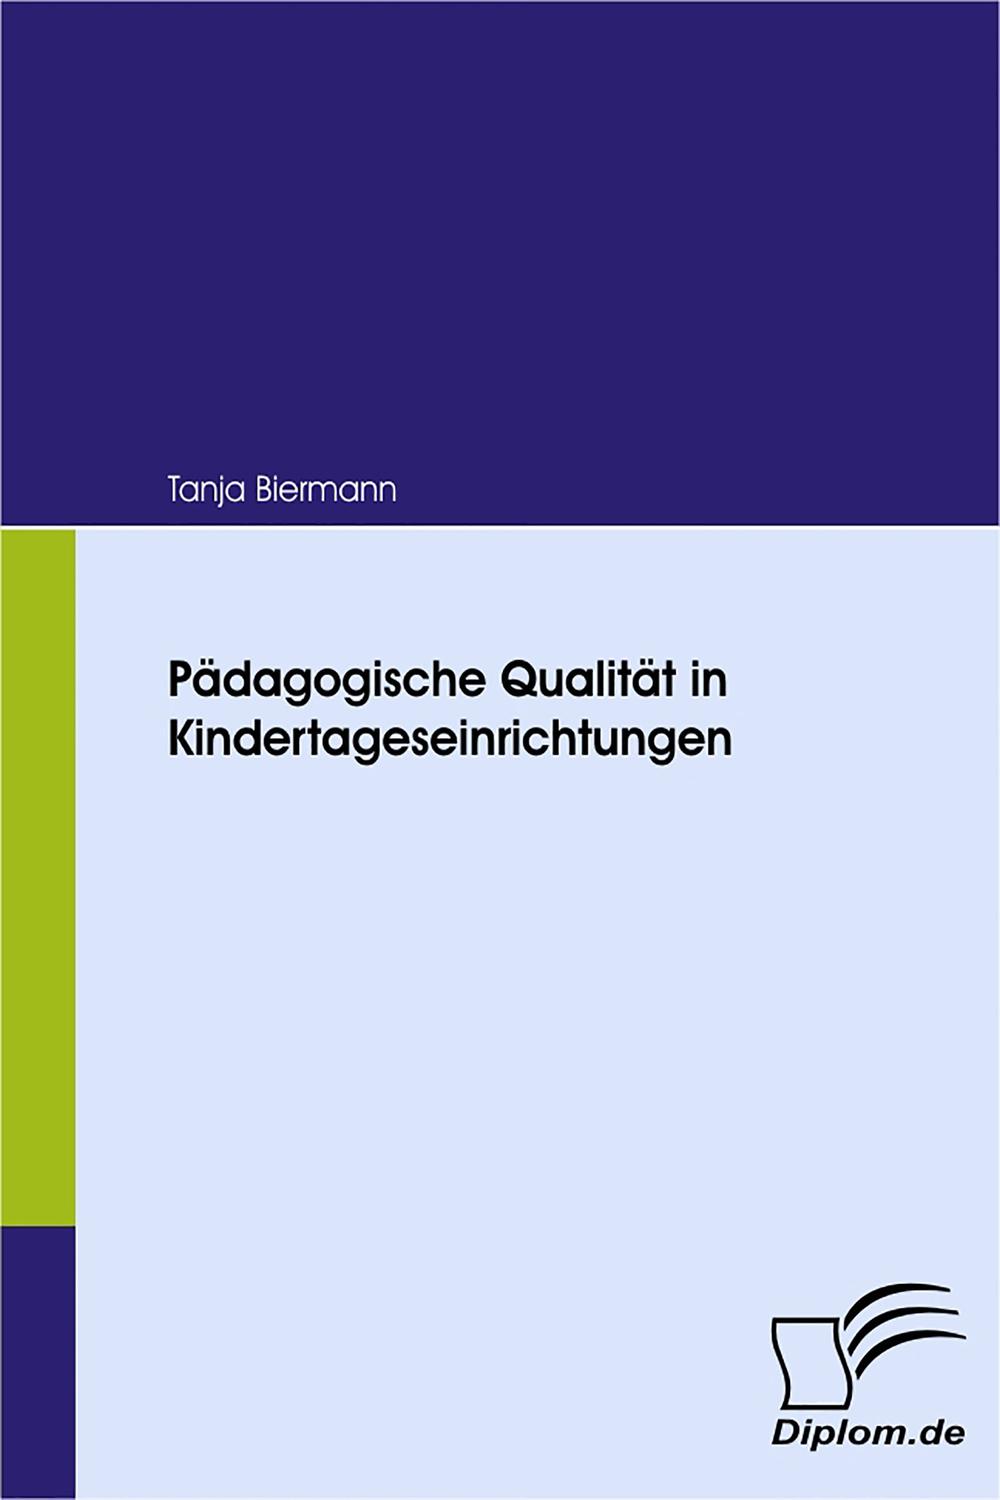 Pädagogische Qualität in Kindertageseinrichtungen - Tanja Biermann